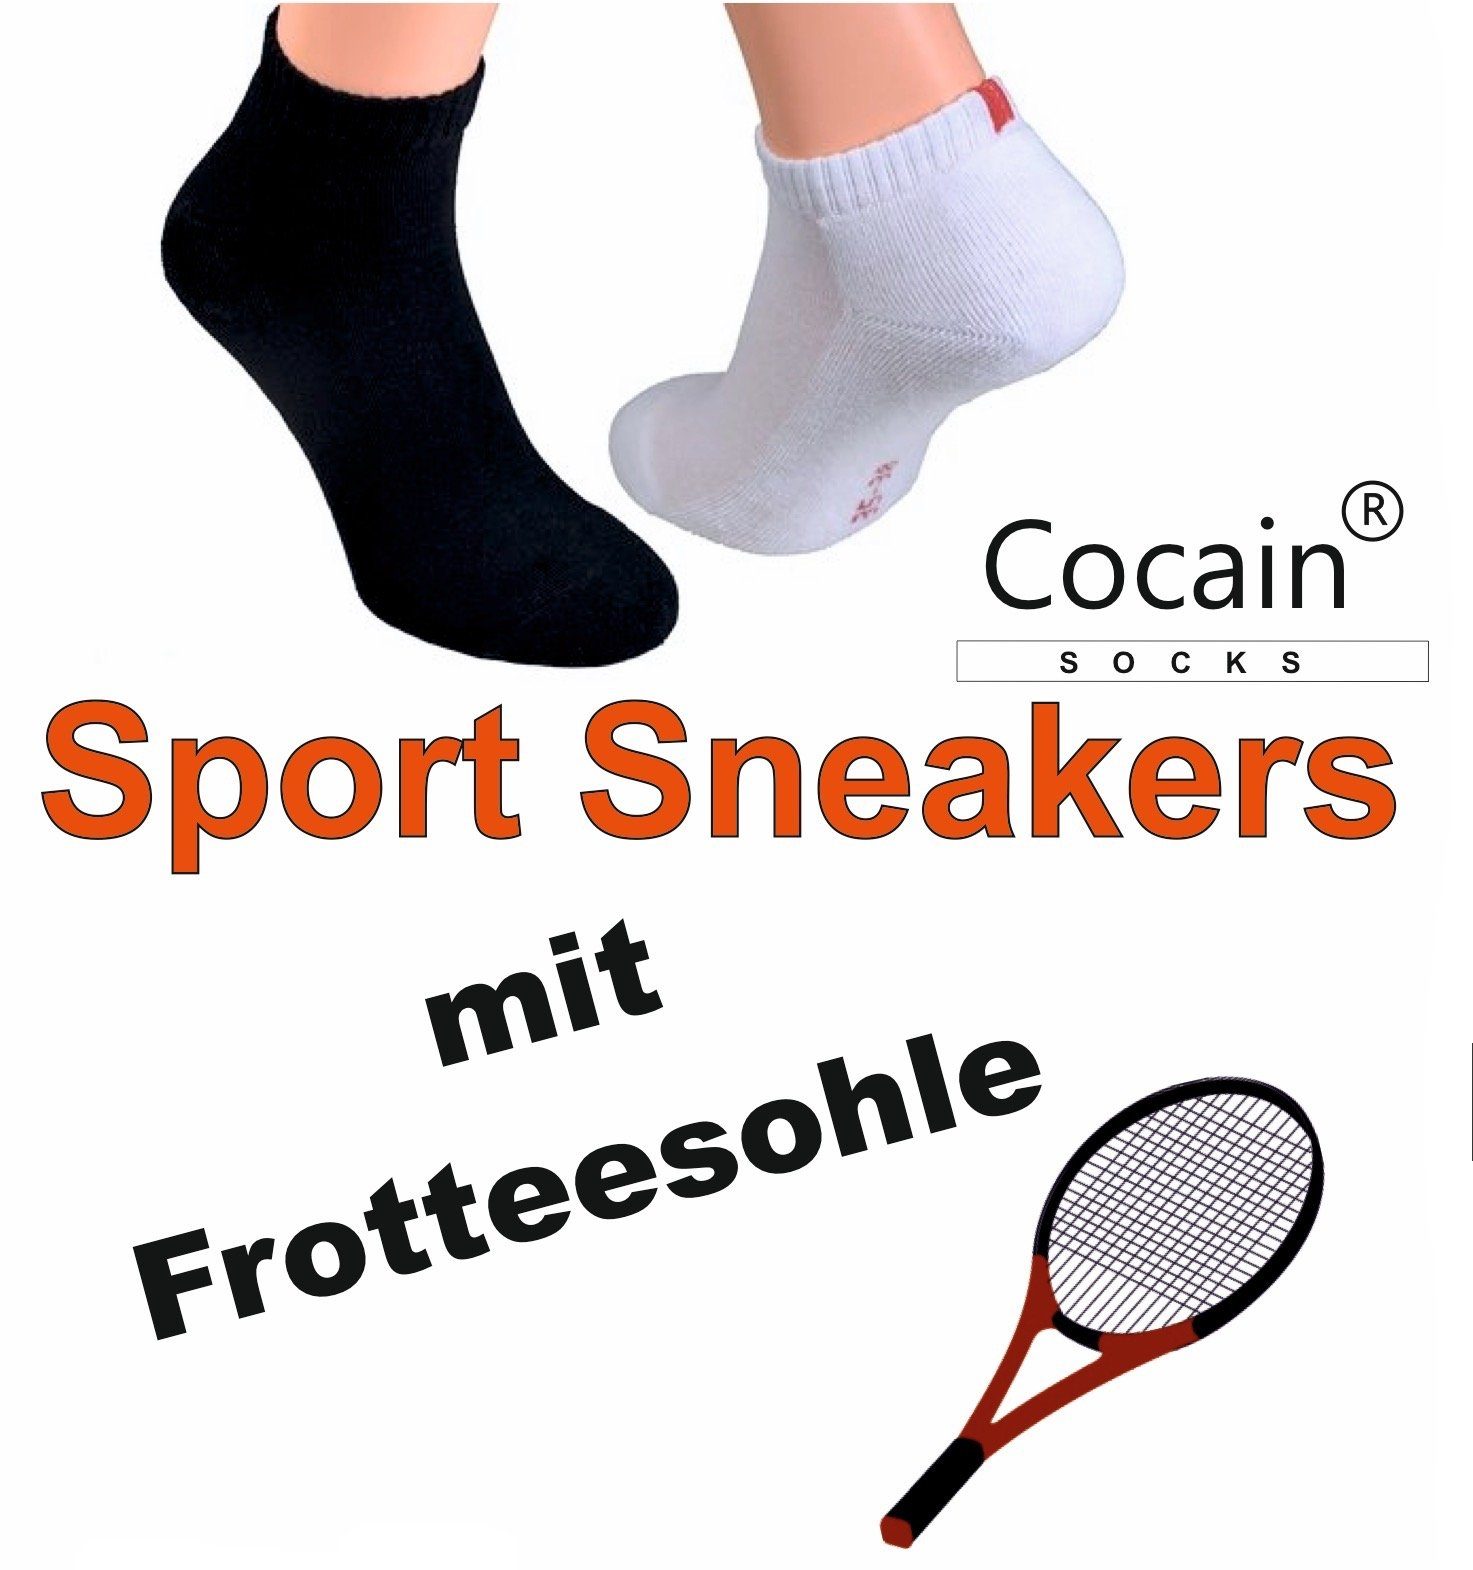 Frotteesohle 12 Cocain underwear Herren Sneakersocken schwarz weiß Sneaker 6 Socken oder Damen Paar (6-Paar)